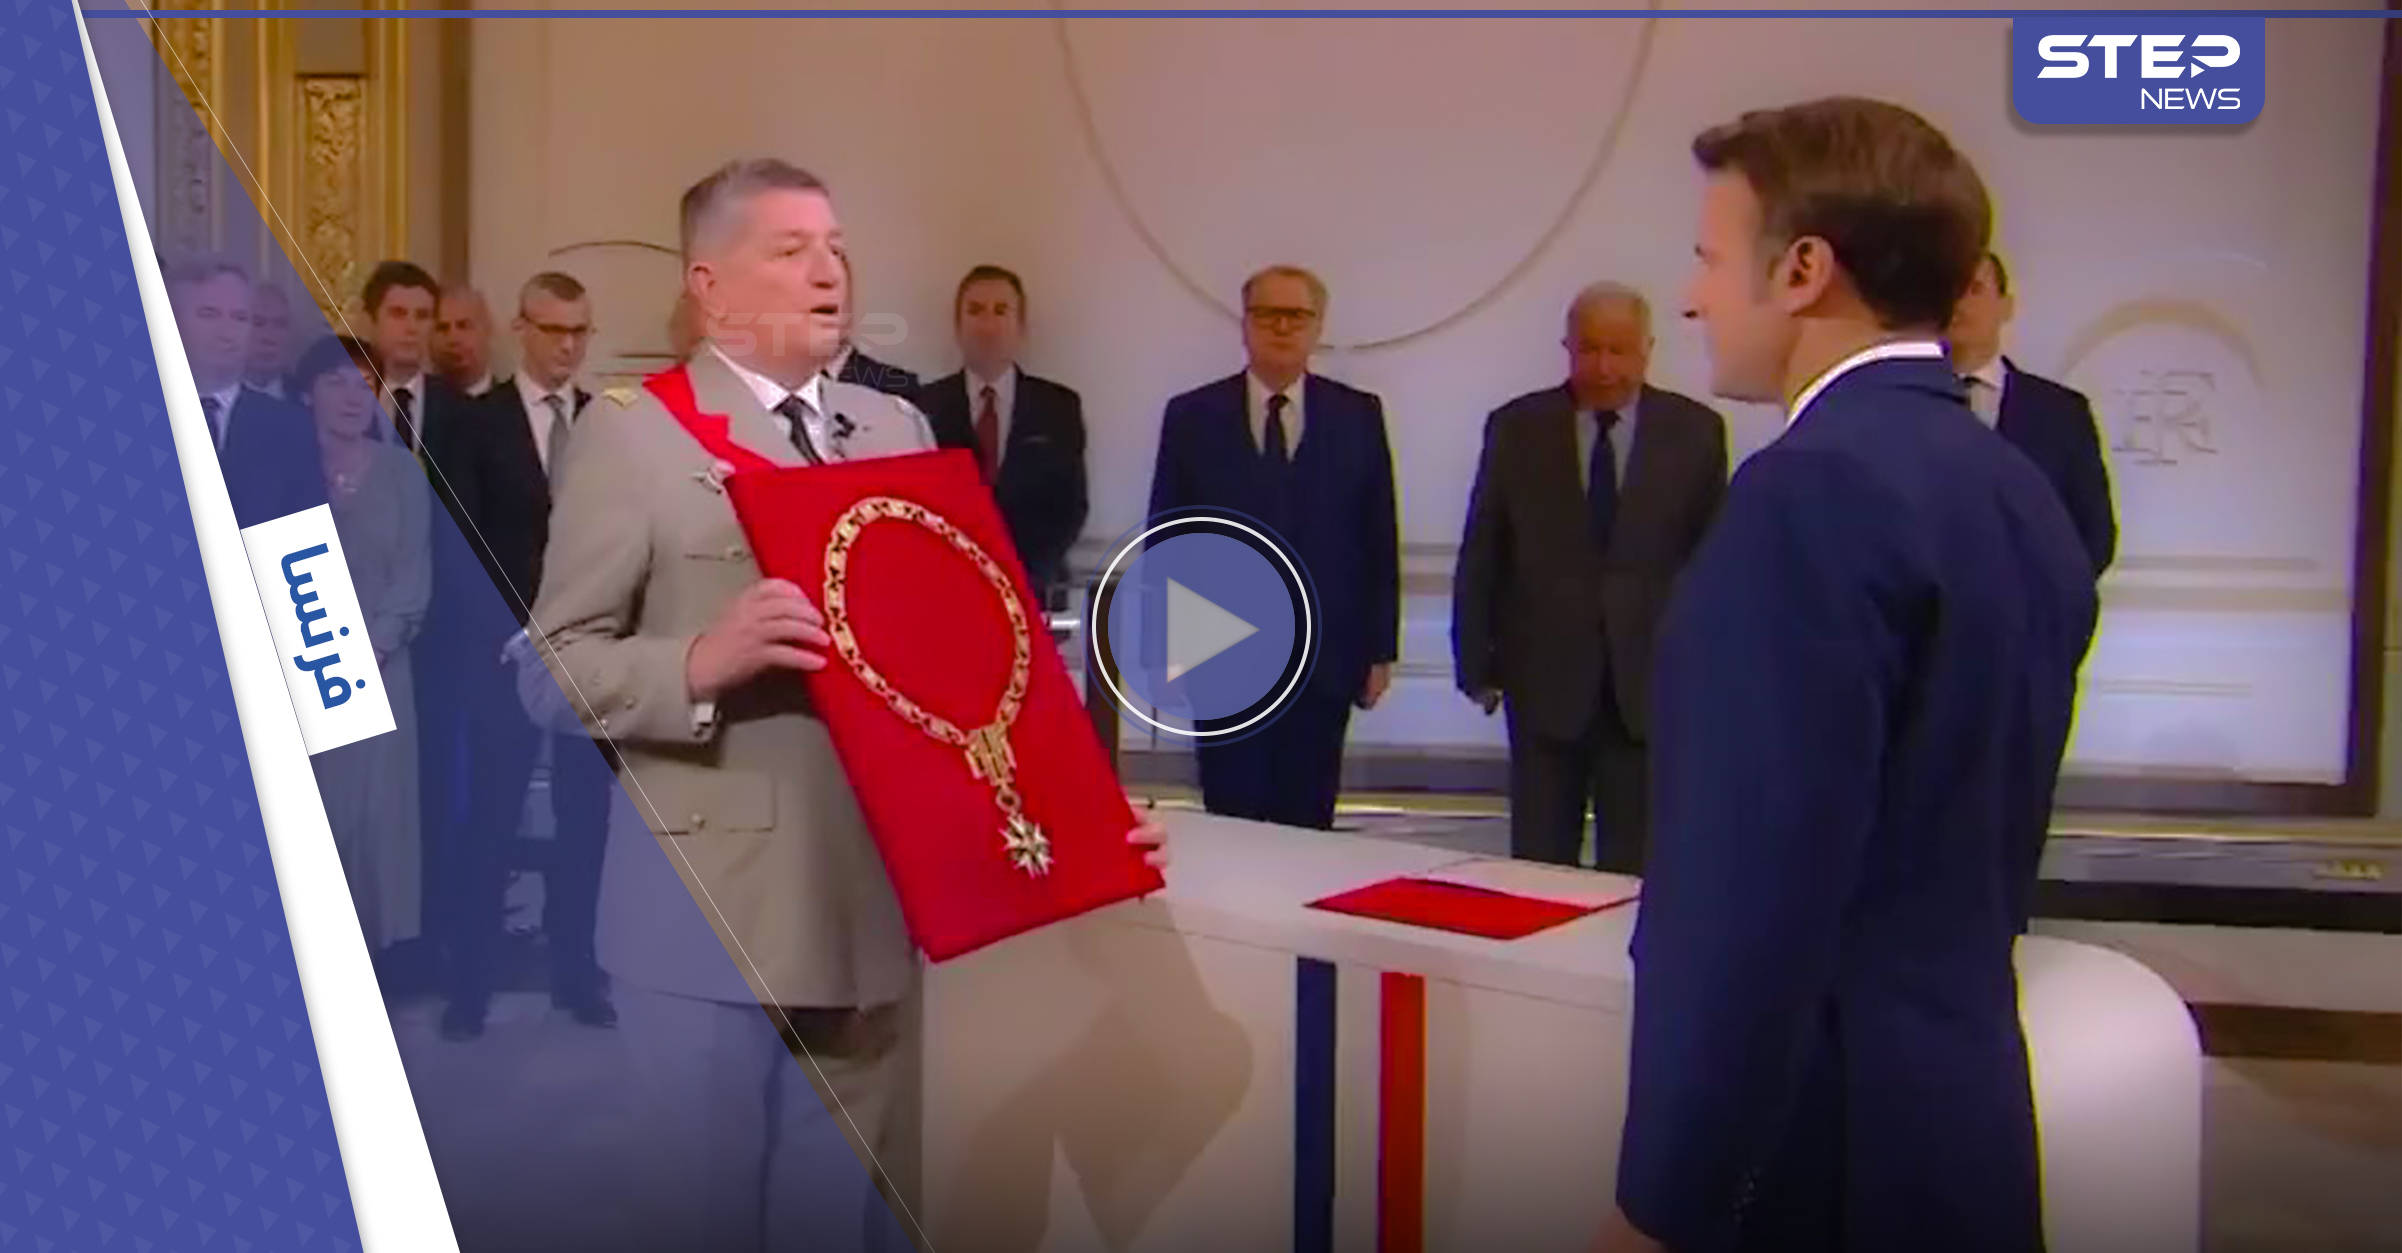 قصة القلادة الذهبية الممنوحة إلى الرئيس الفرنسي "ماكرون" بحفل تنصيبه وسبقه بحملها بشار الأسد (فيديو)